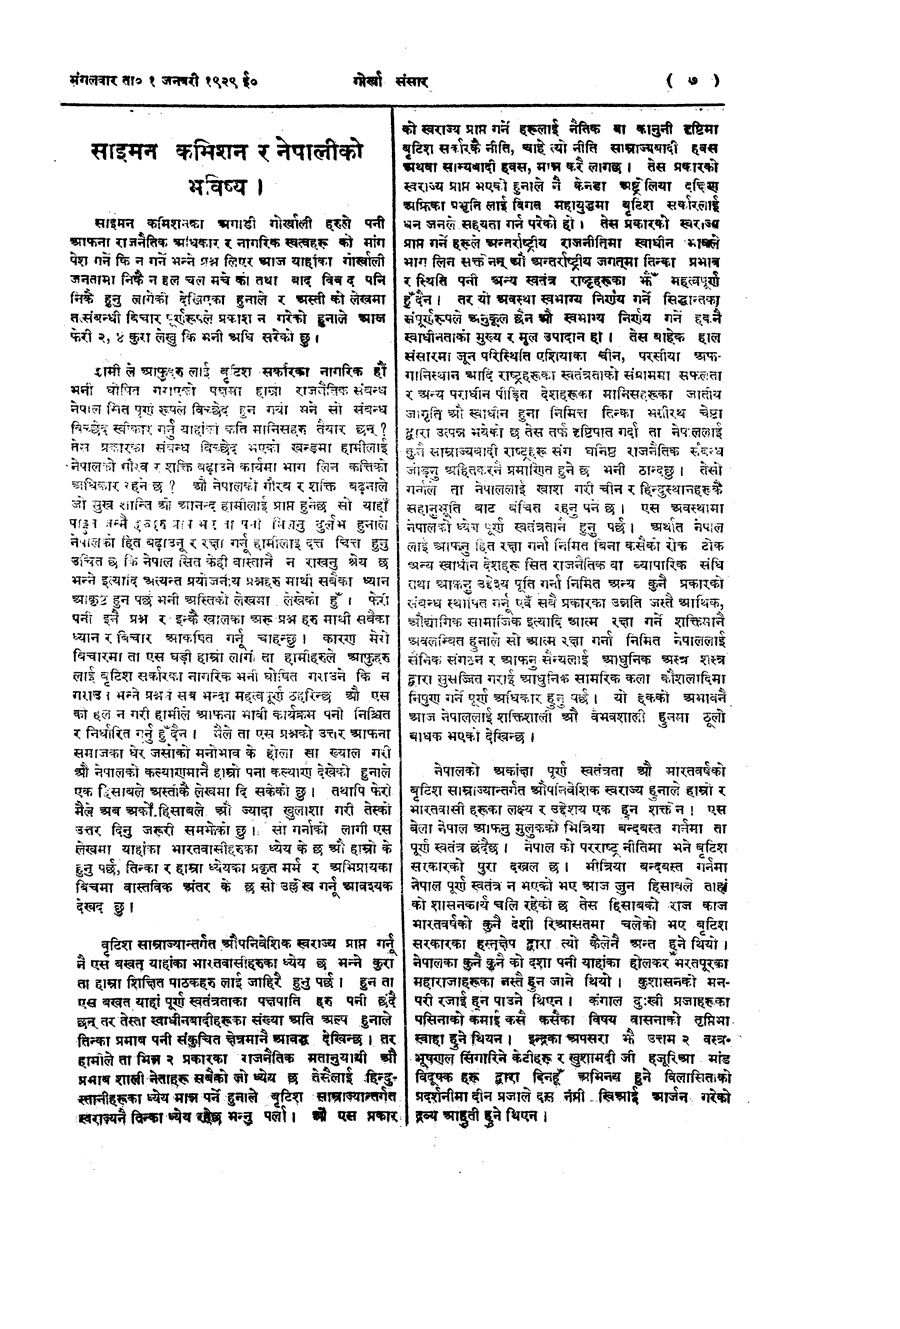 Gorkha Sansar, 1 Jan 1929, page 7